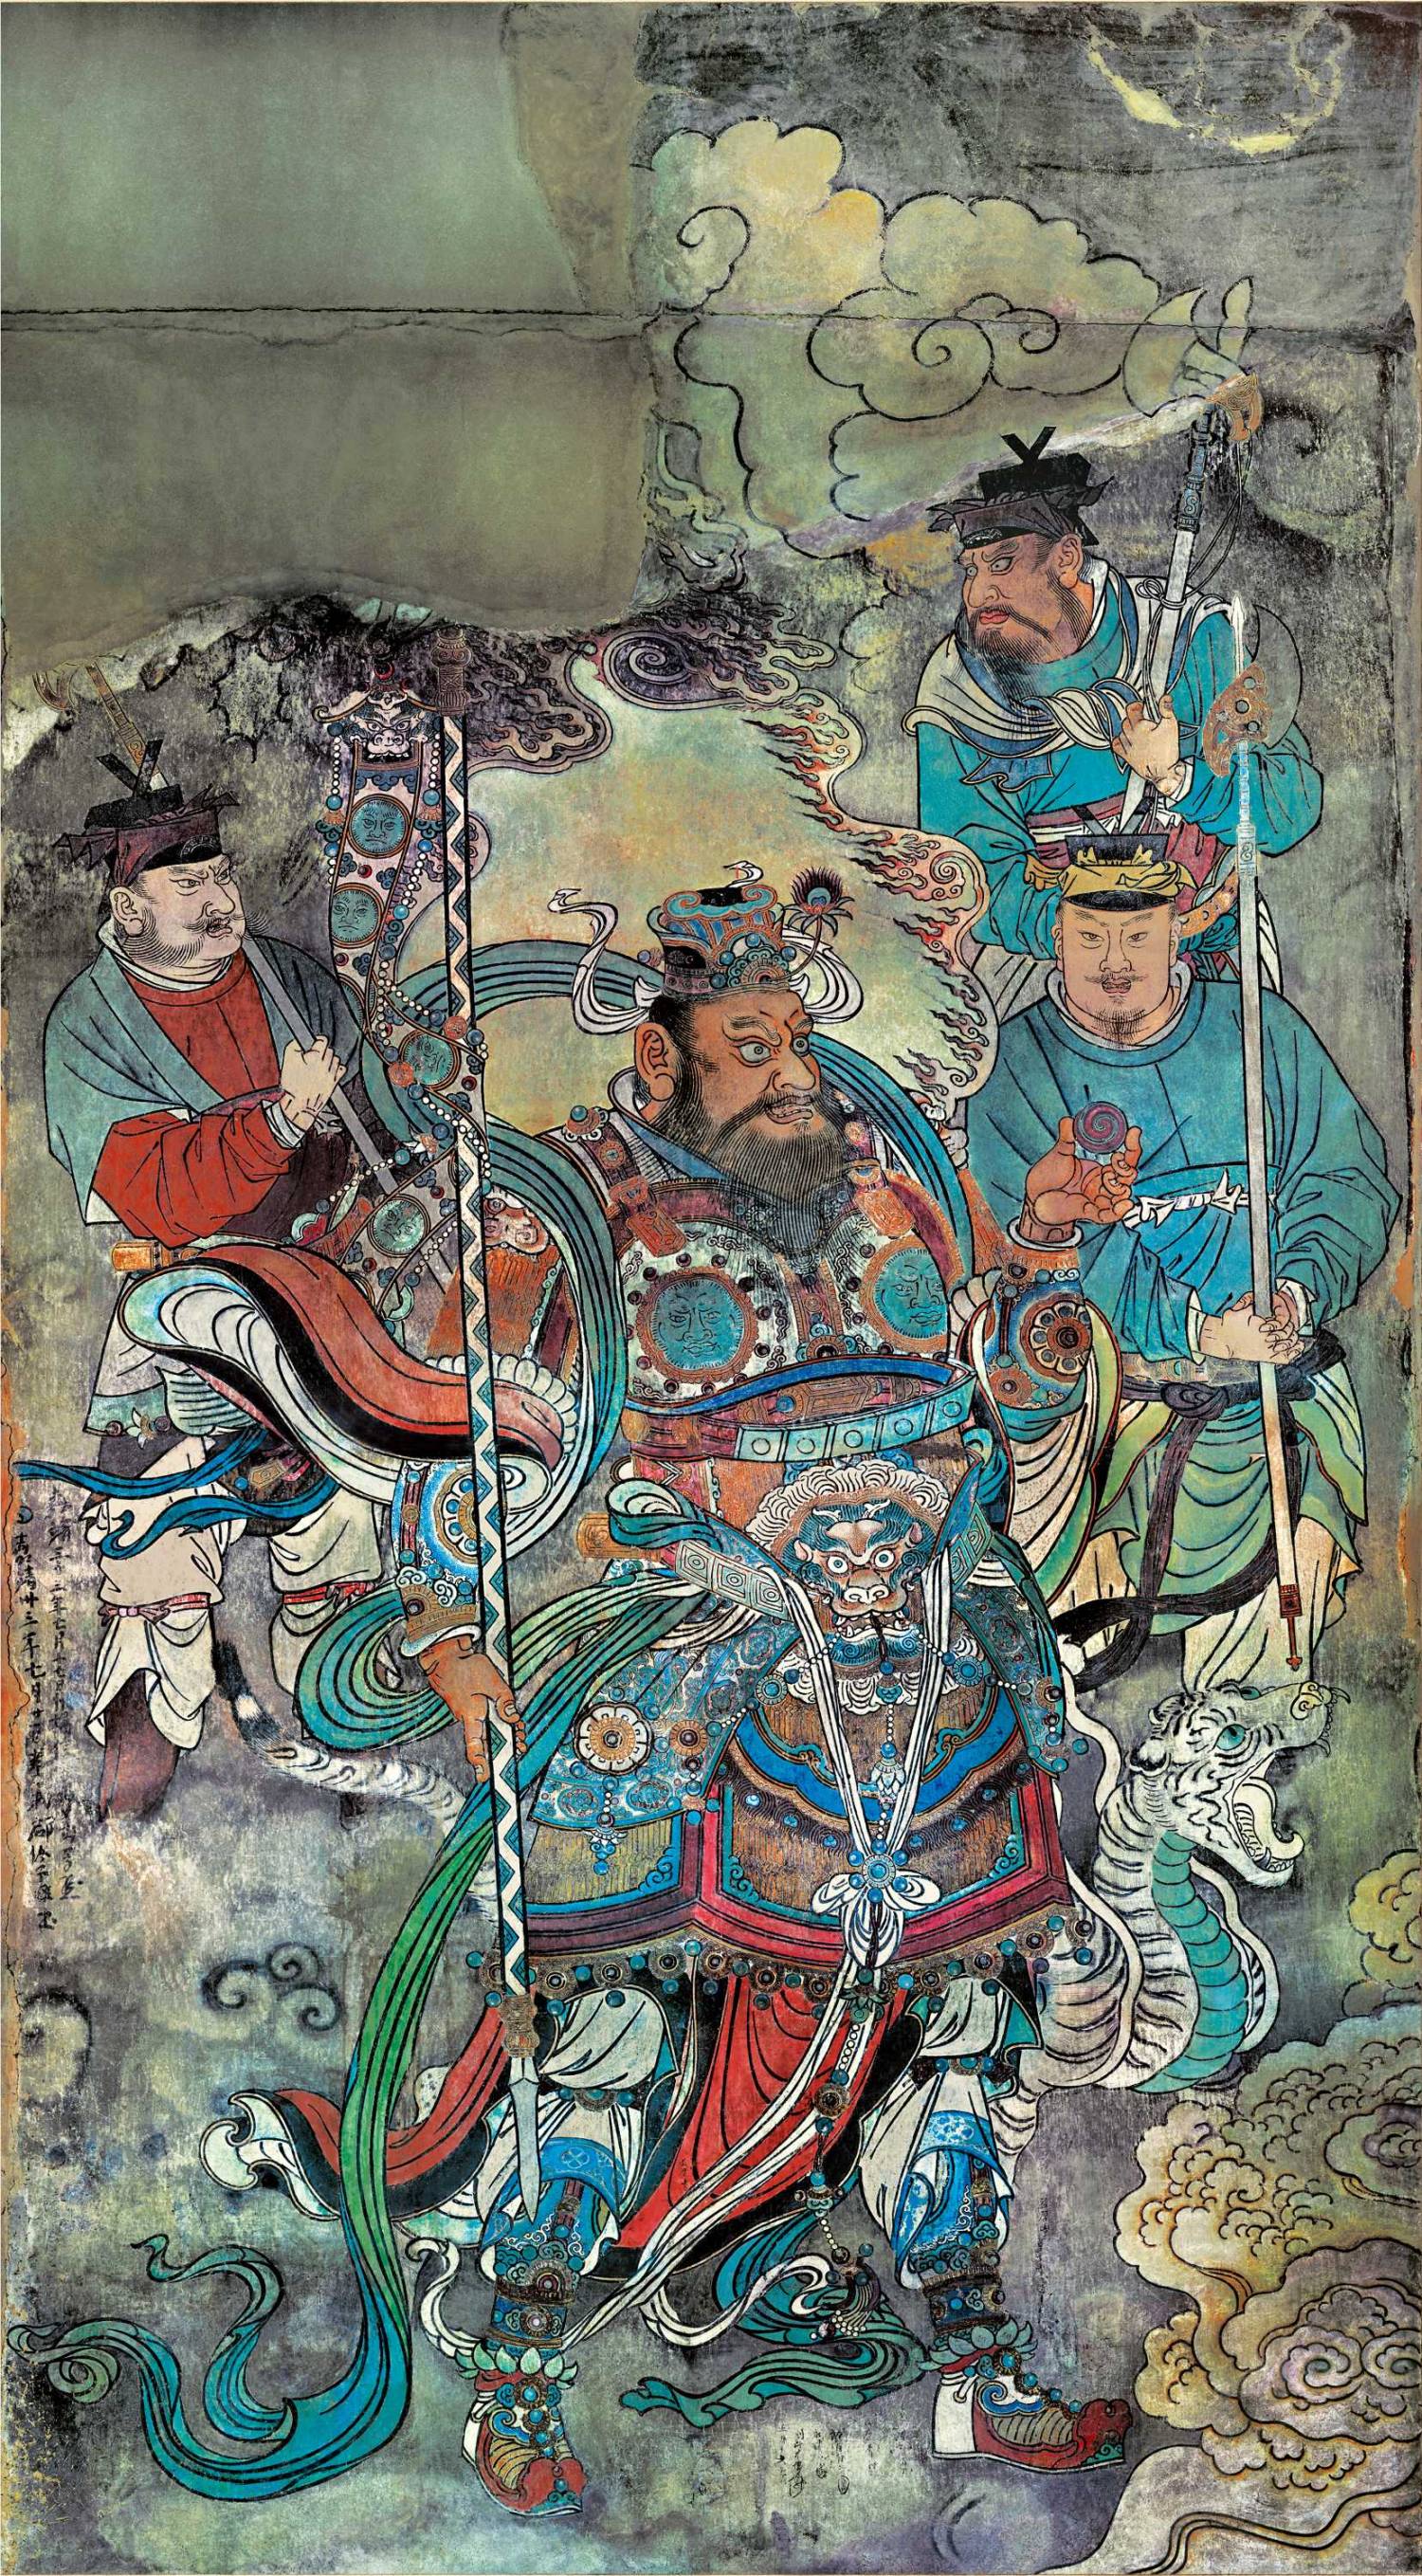 永乐宫壁画《朝元图》第10段压缩版